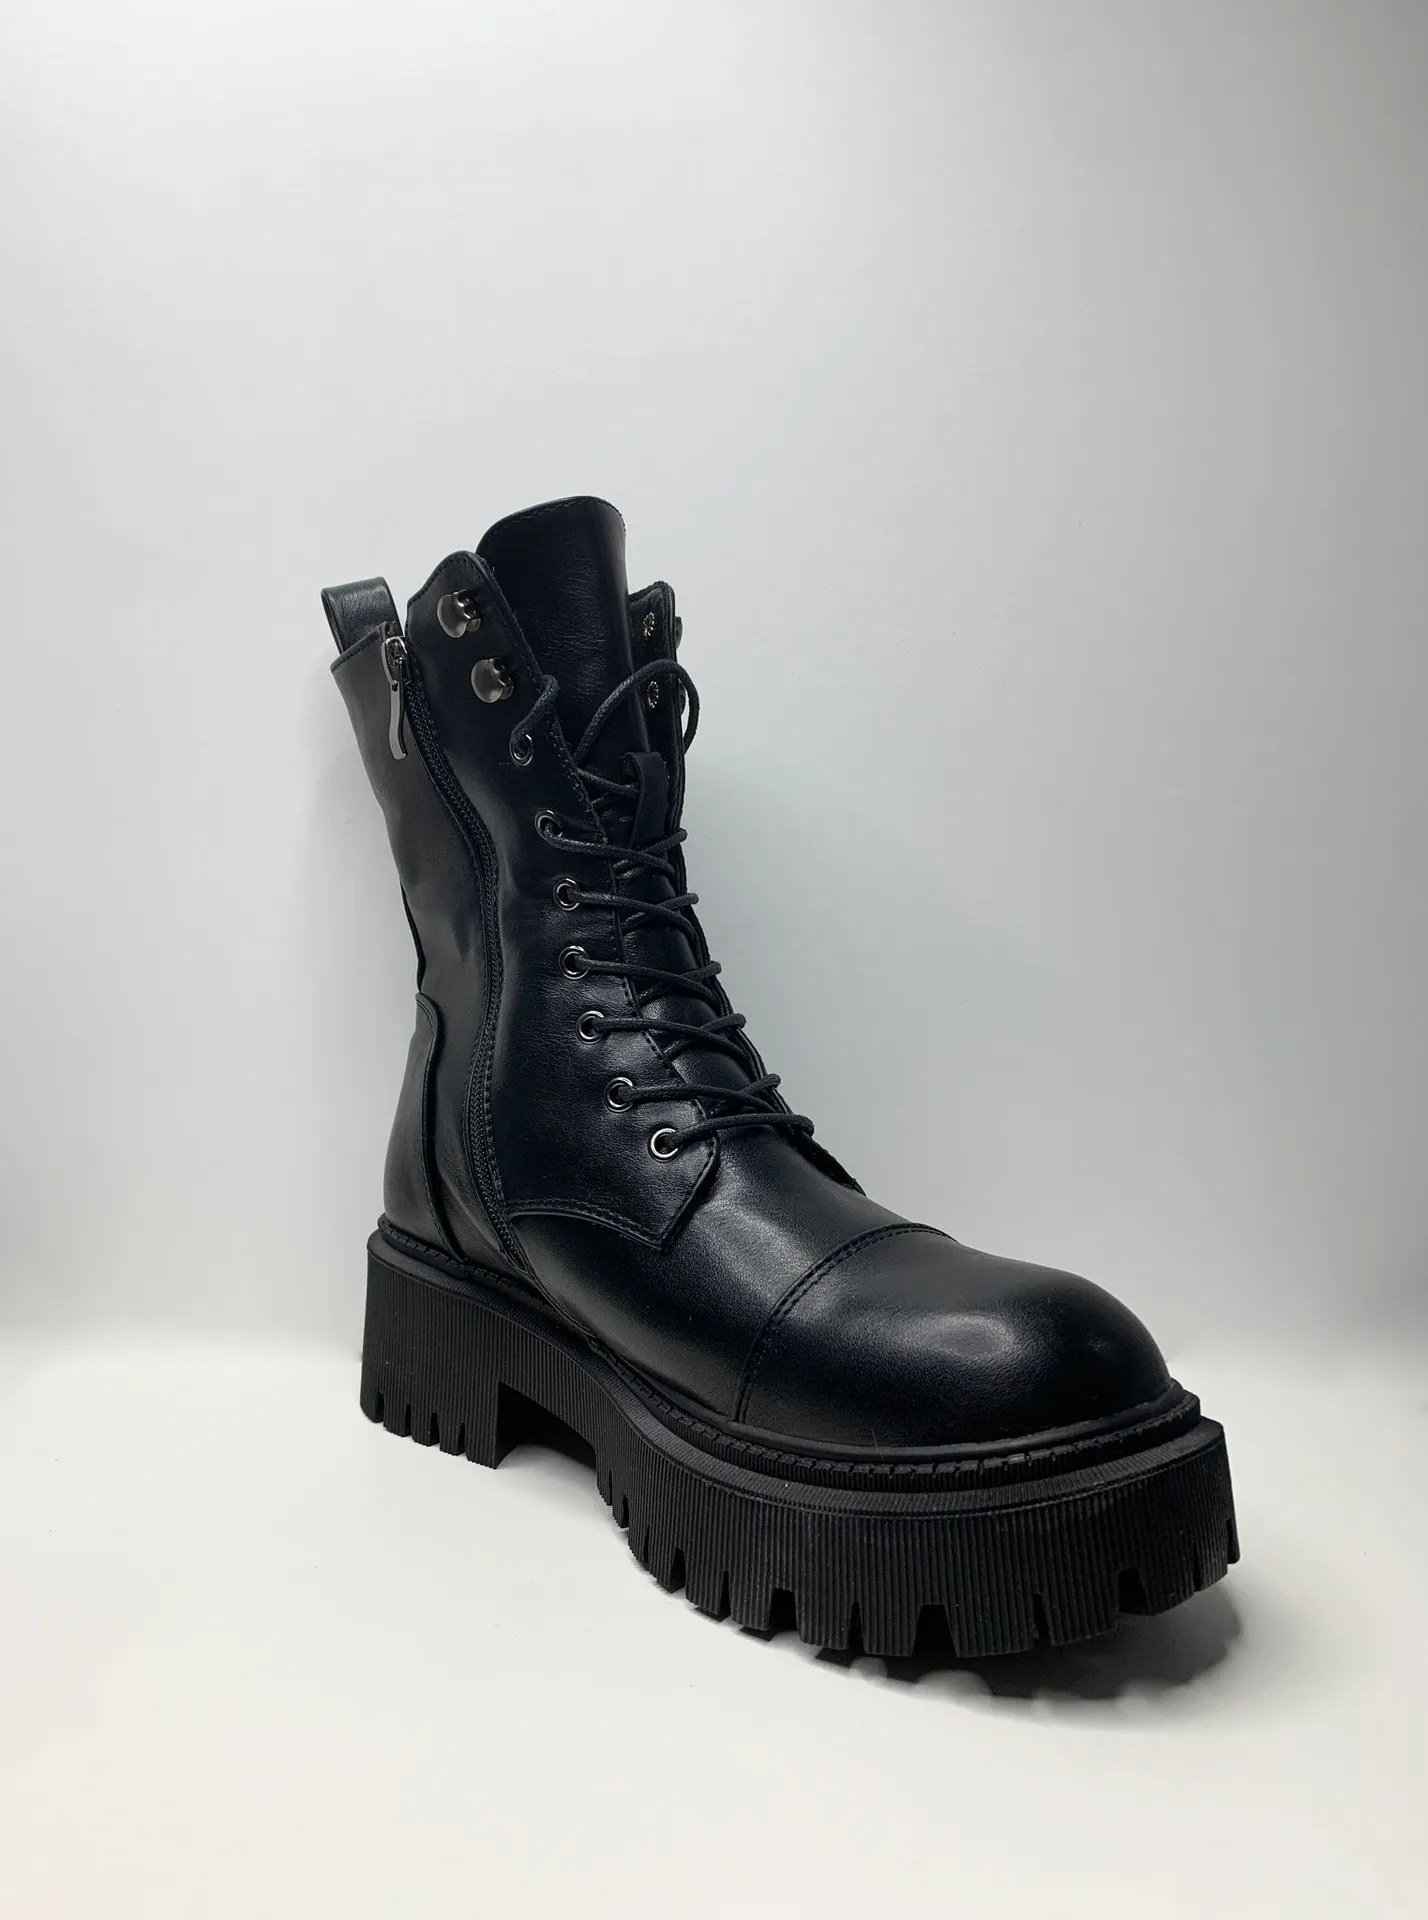 Ботинки Omila Н301 со шнуровкой и молнией\Черный купить